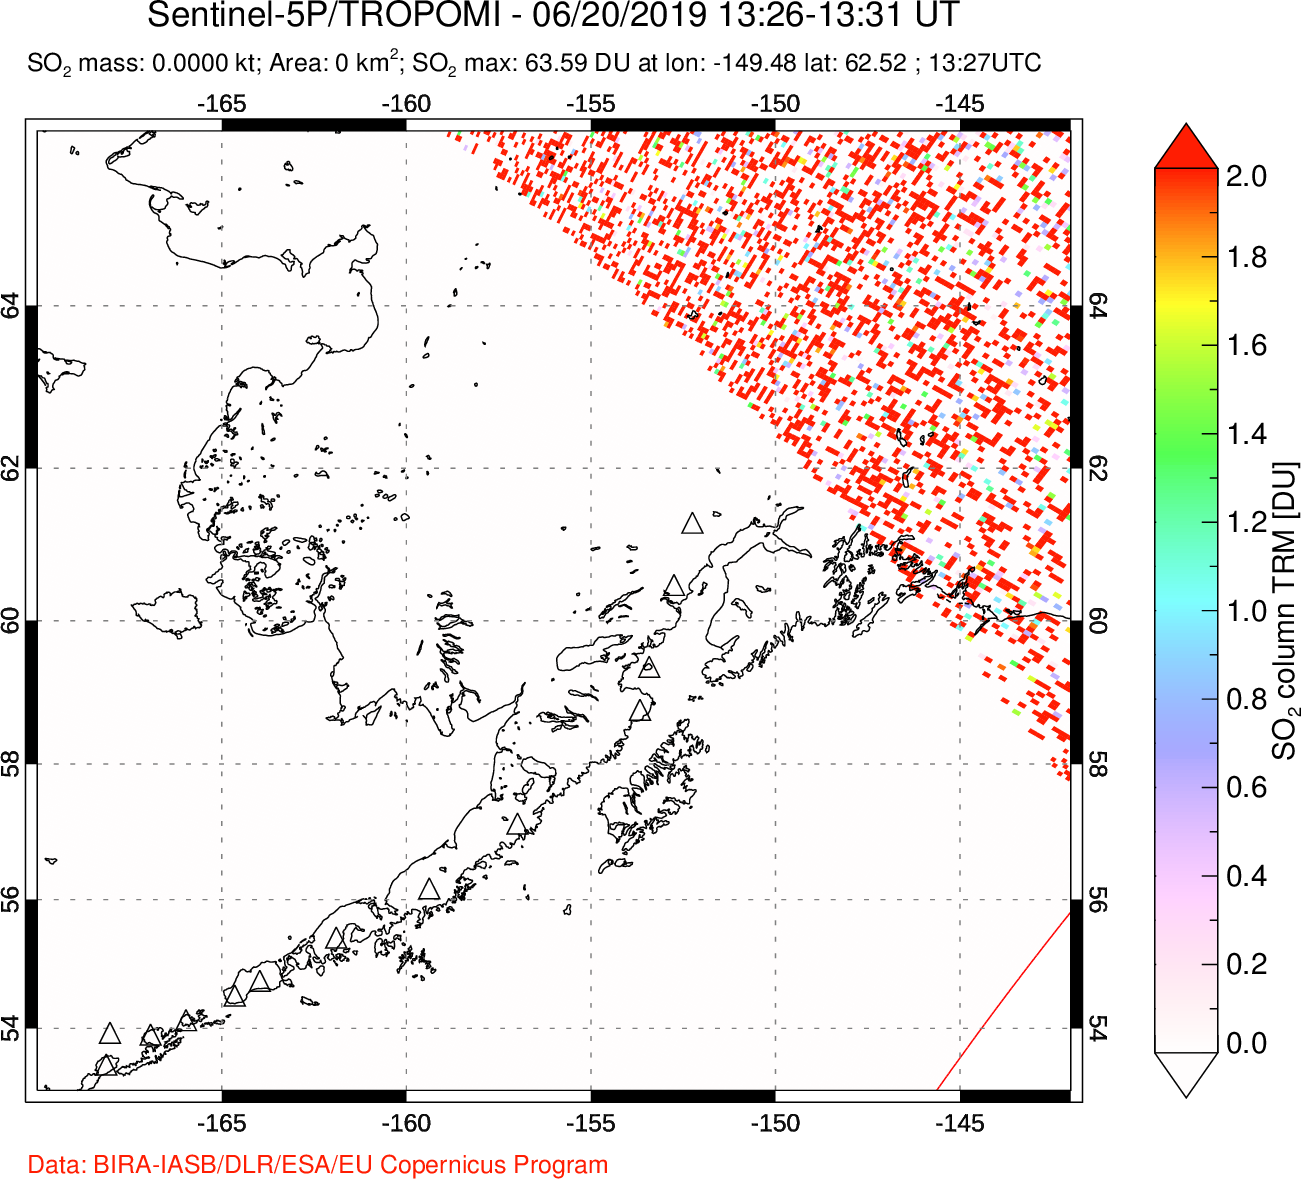 A sulfur dioxide image over Alaska, USA on Jun 20, 2019.